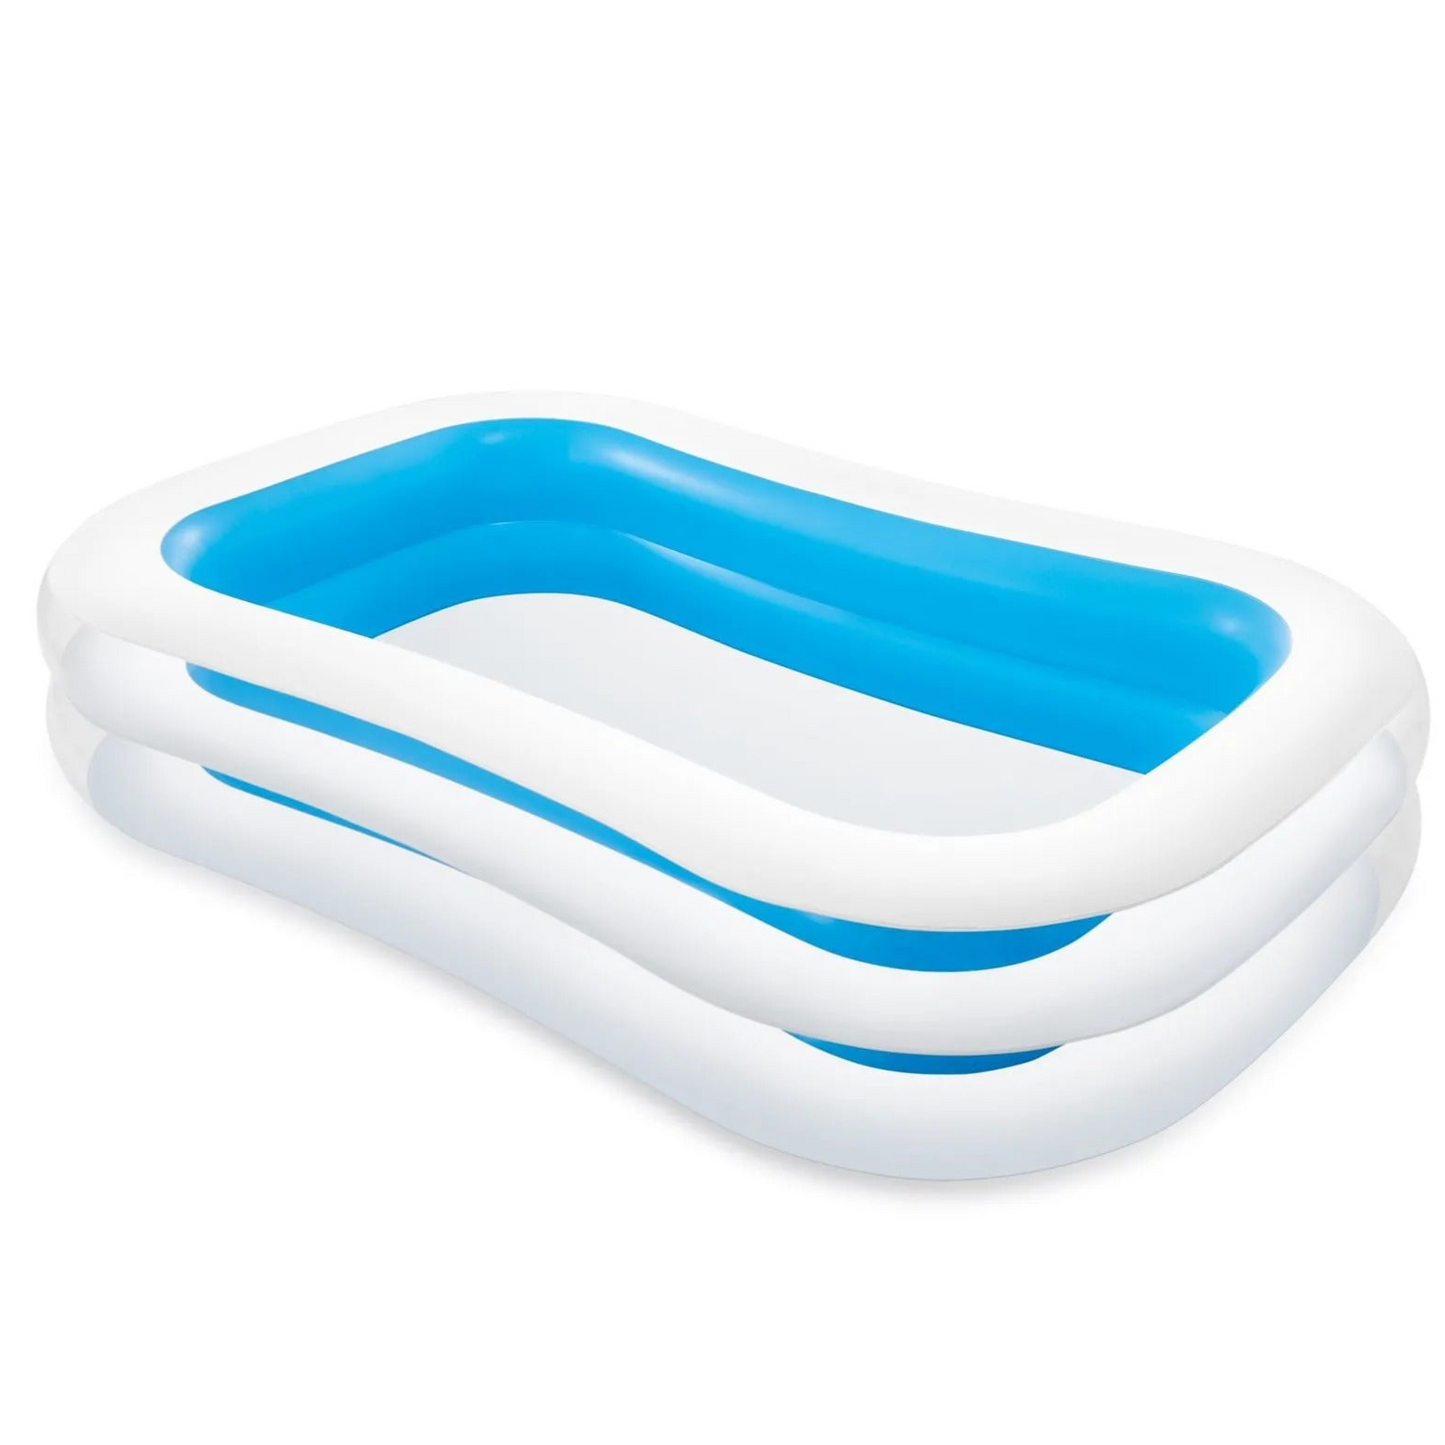 Intex Swimming Tub - White and Blue - (L 261 X B 175 X H 55 cm)